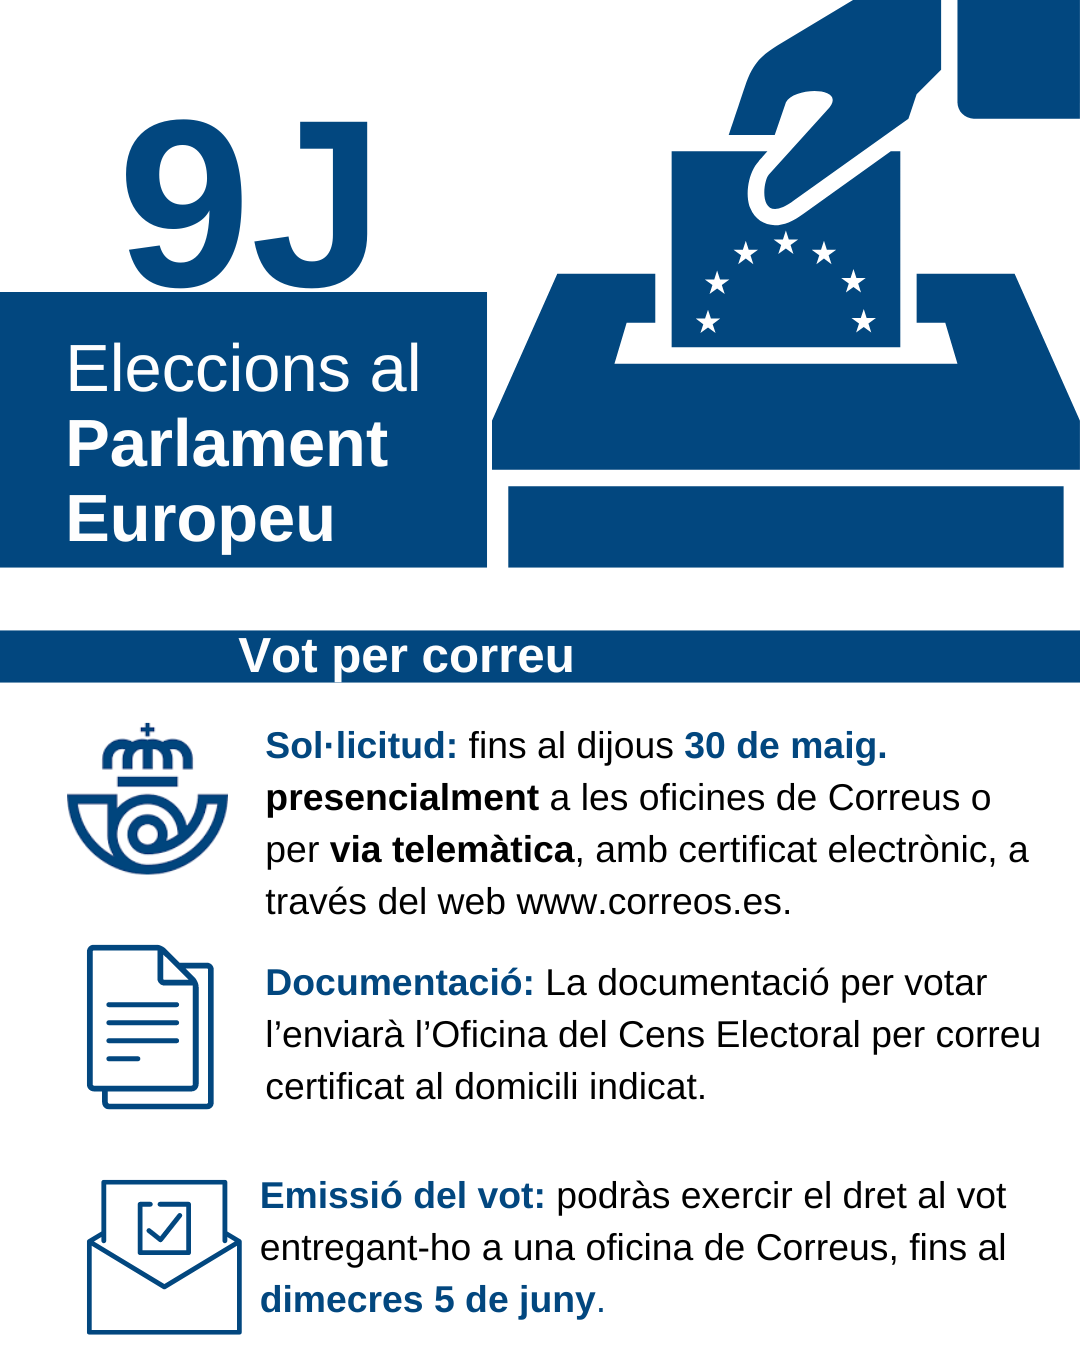 Sol·licitud del vot per correu a les Eleccions al Parlament Europeu del 9 de juny